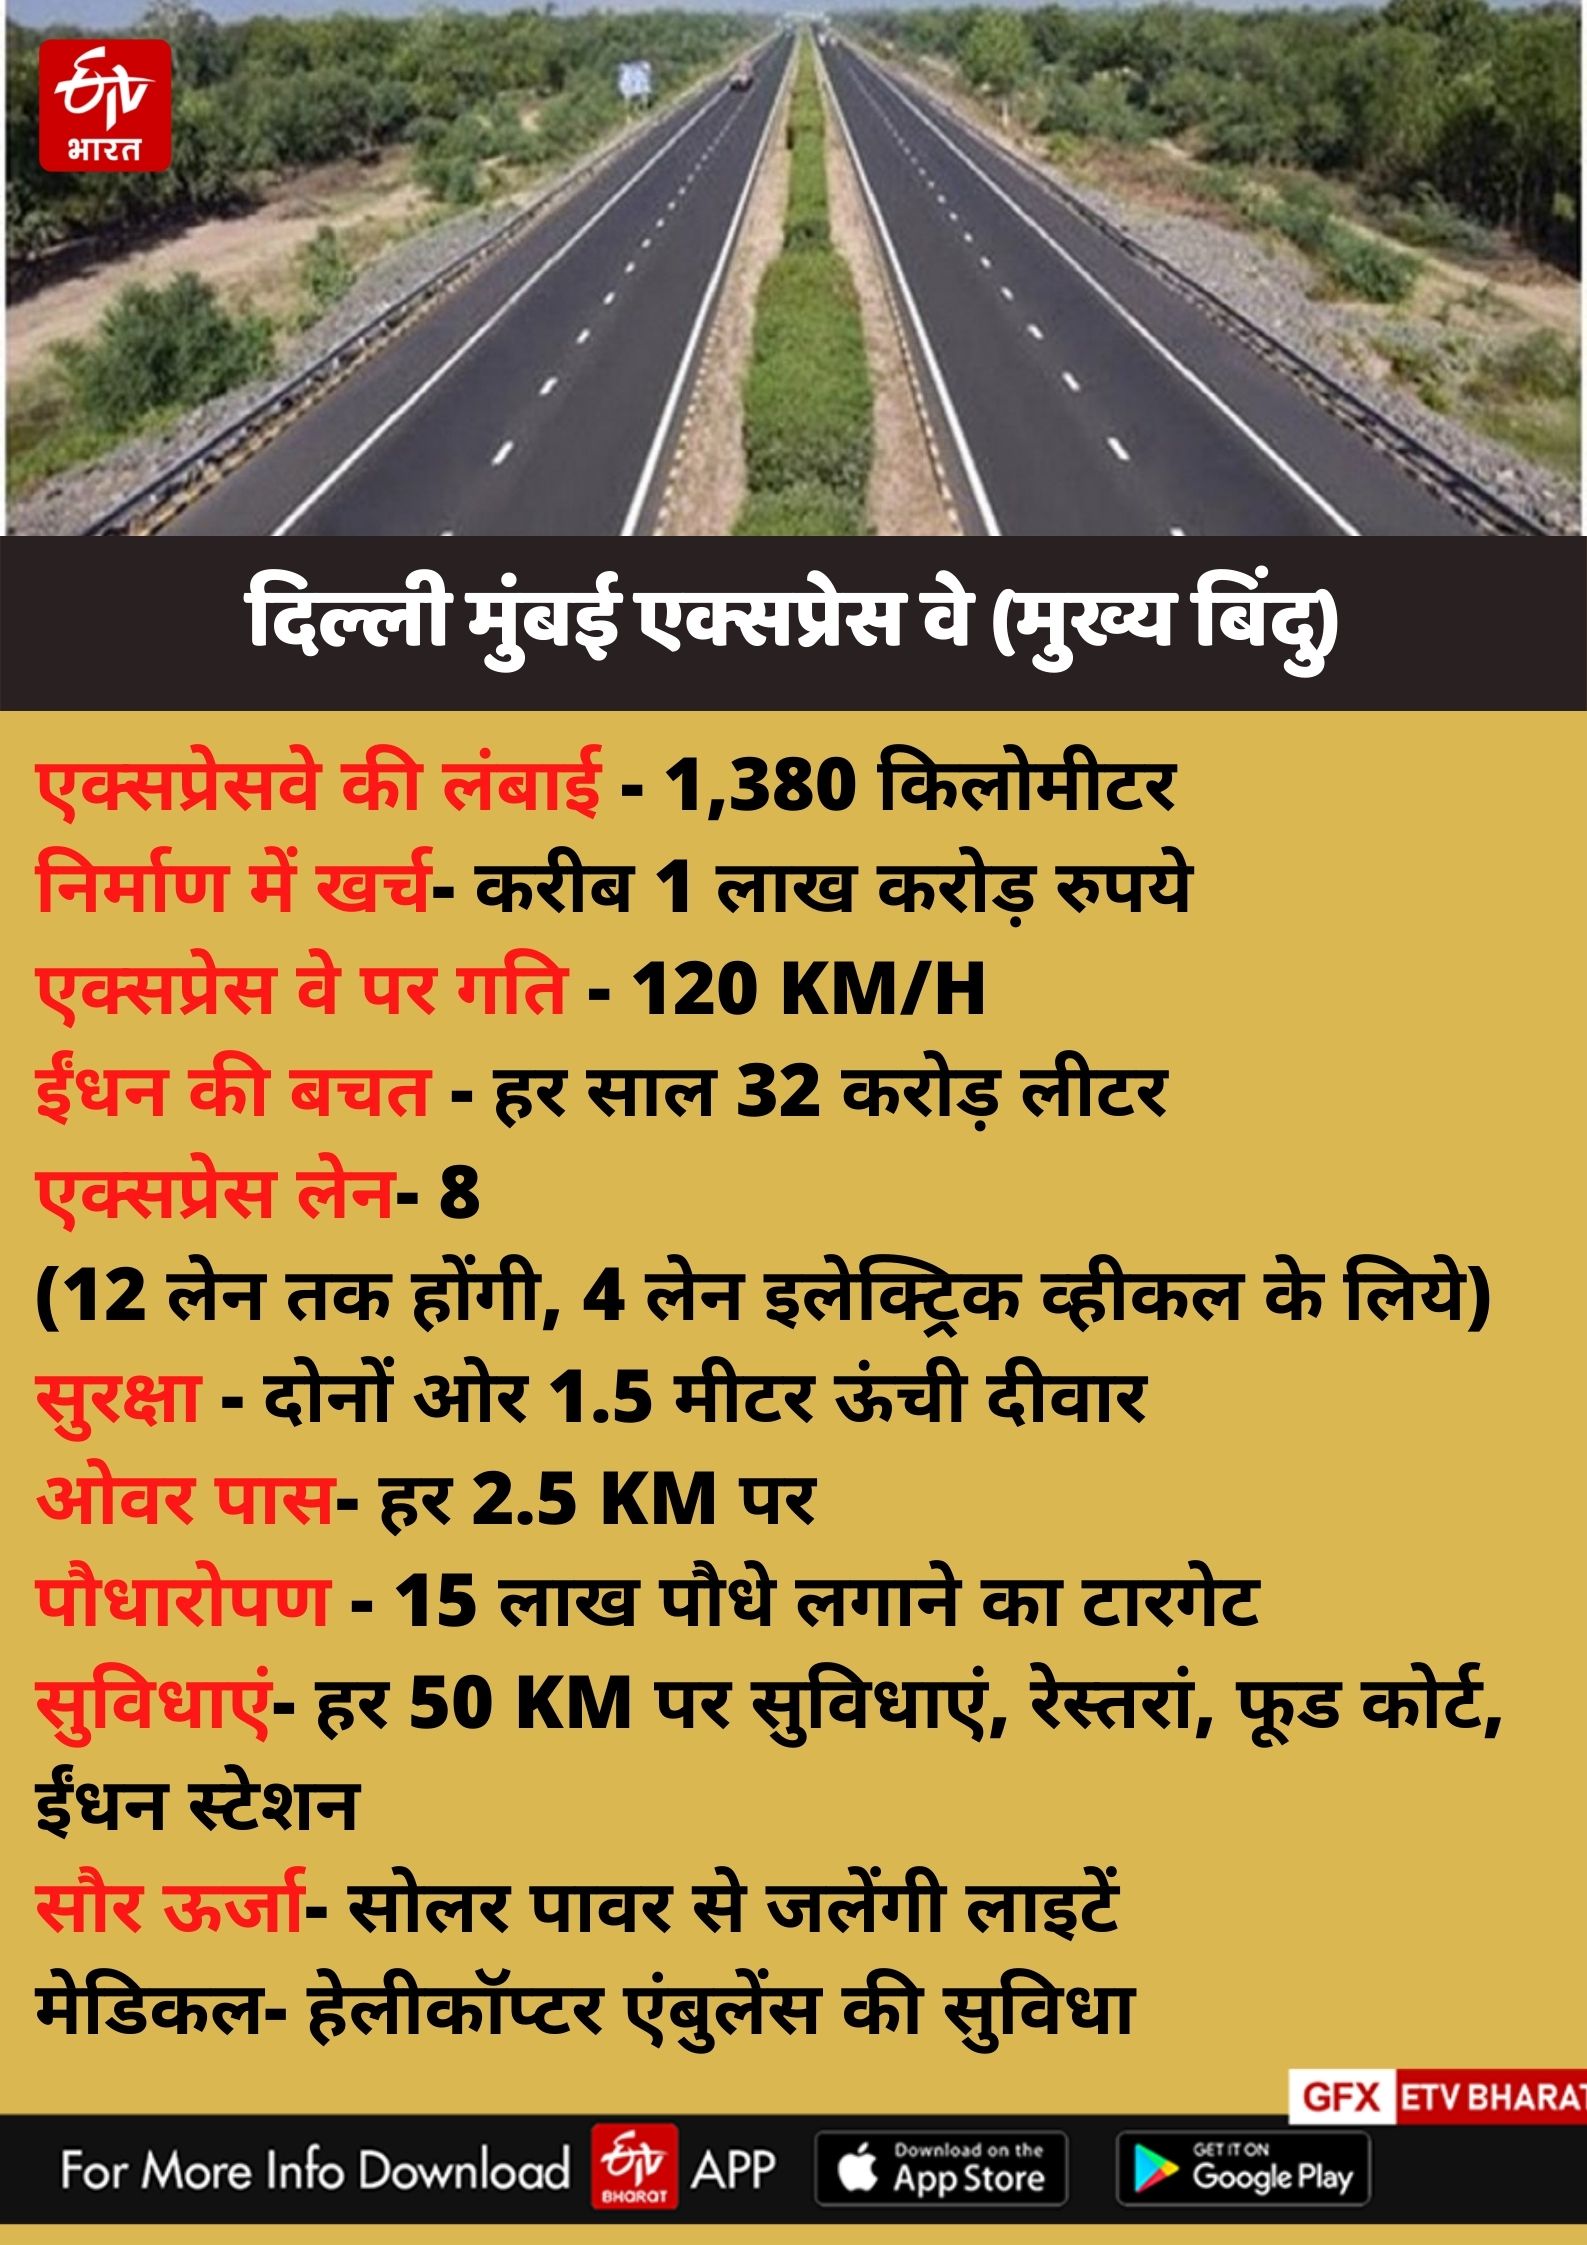 Bihar Ring Road: बिहार के 6 जिलों में बनेगा रिंग रोड, केंद्र को जल्‍द भेजी  जाएगी शहरों की लिस्‍ट - ring road in 6 bihar districts probable cities are  patna gaya muzaffarpur